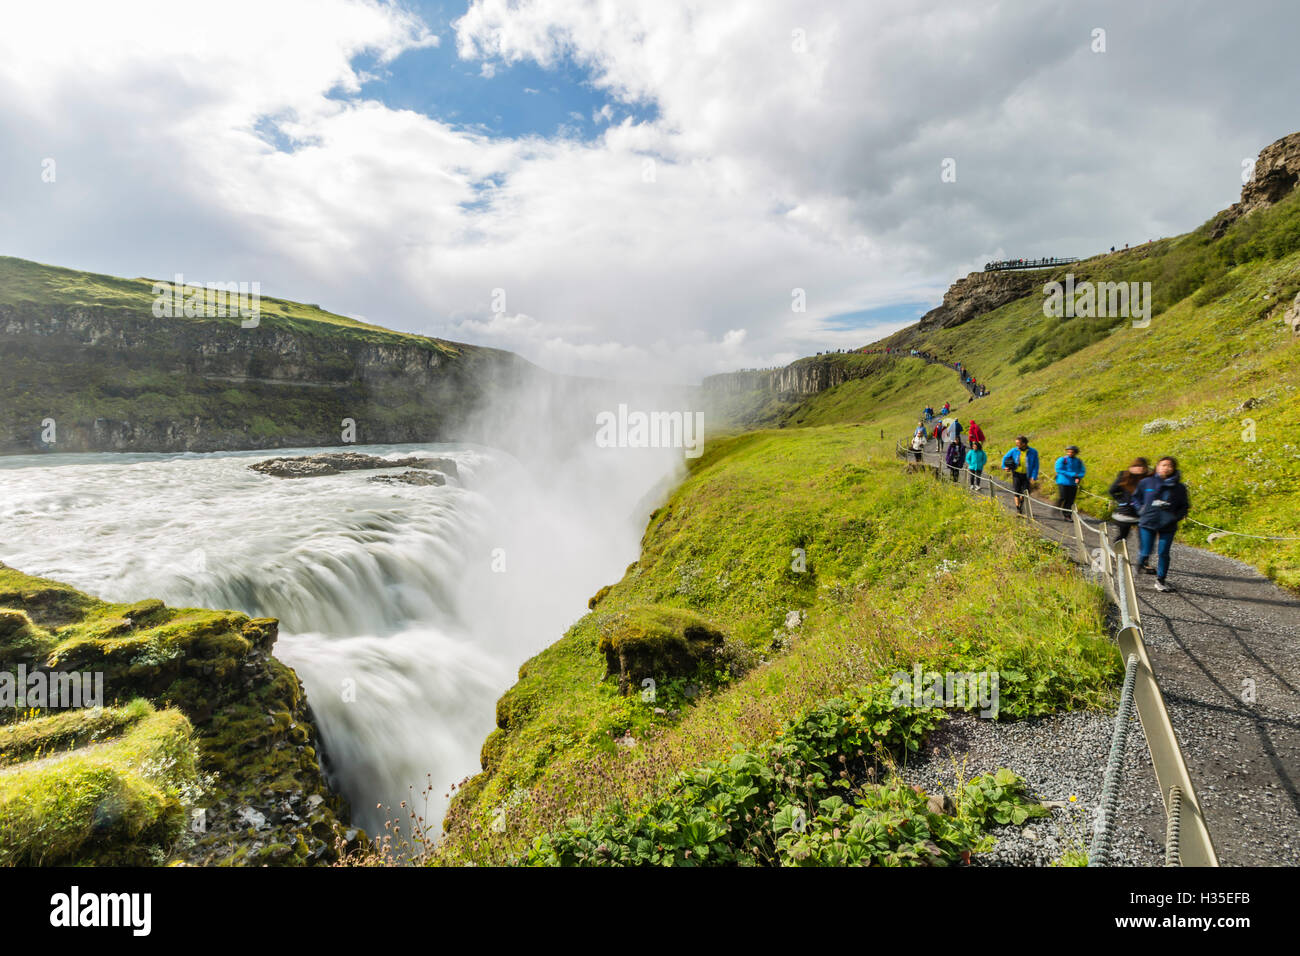 Les touristes visitant Gullfoss (Chutes d'Or), une cascade situé dans le canyon de la rivière Hvita au sud-ouest de l'Islande Banque D'Images